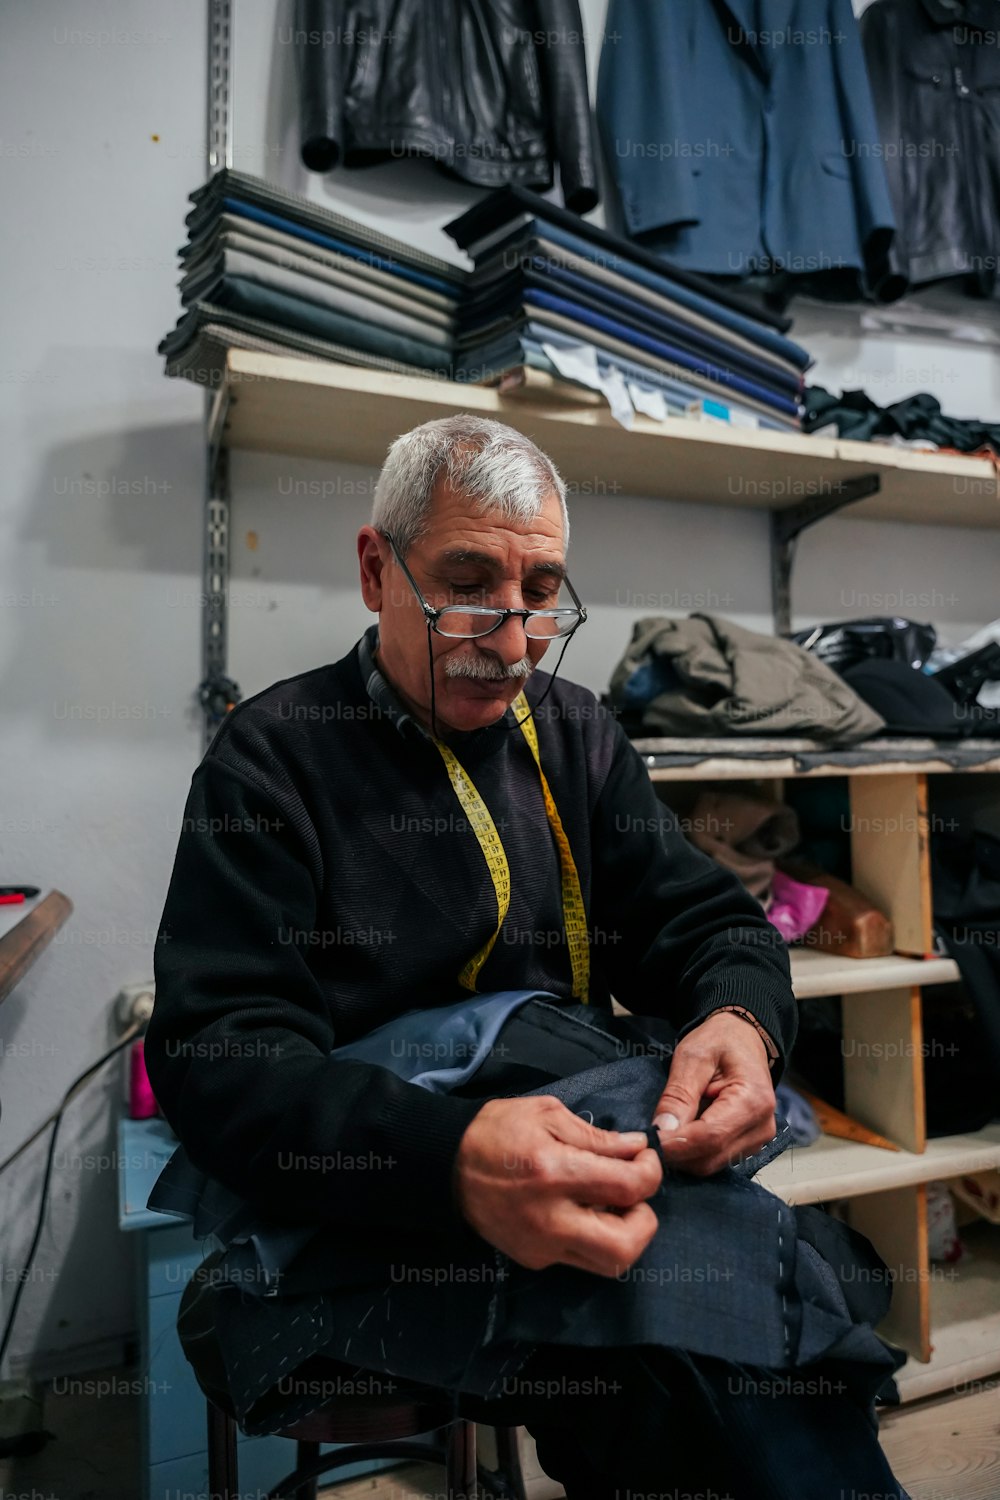 Un hombre sentado frente a un estante de ropa